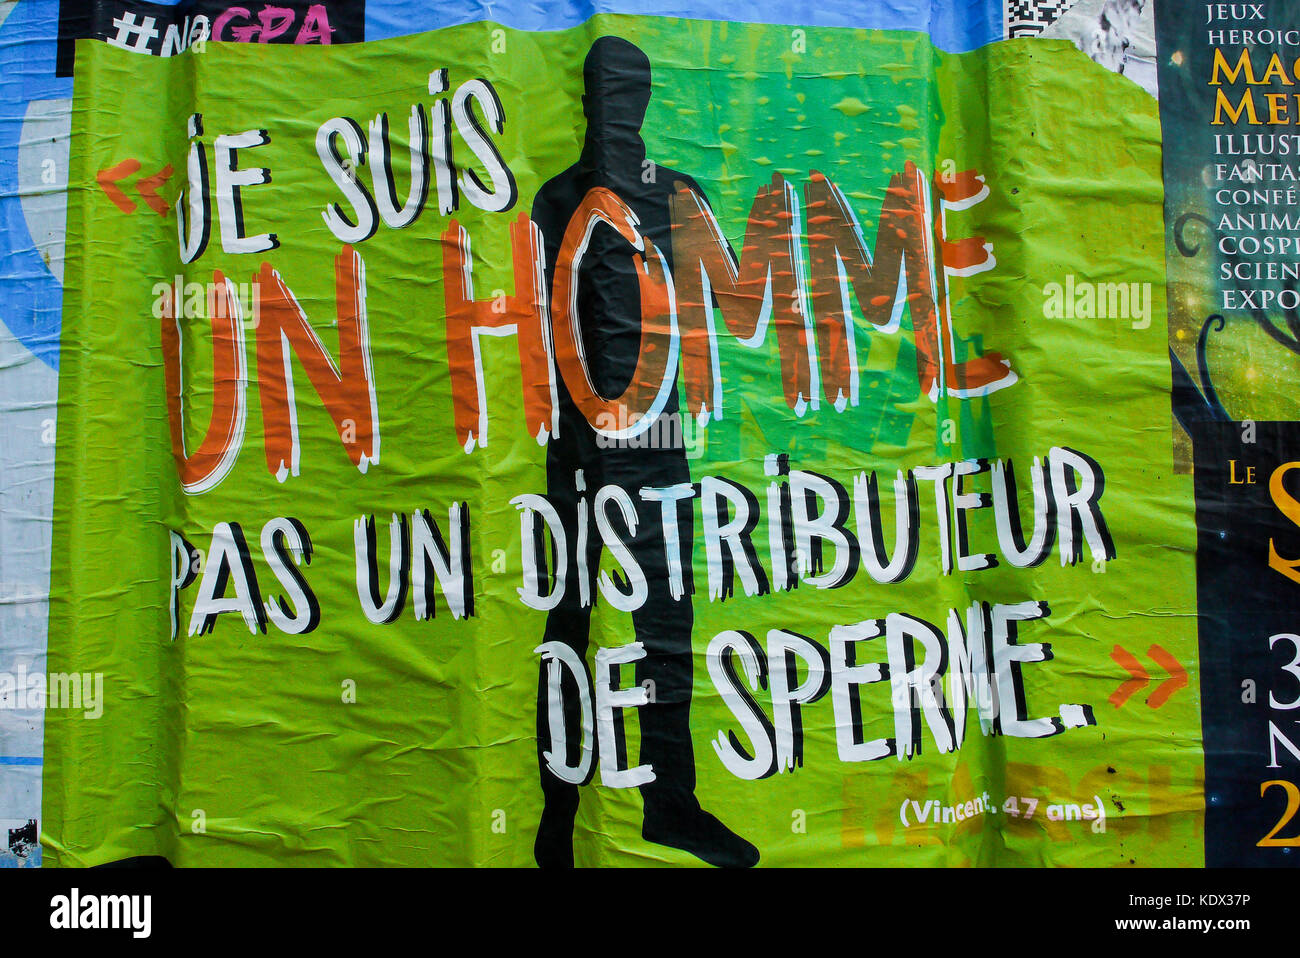 L'anti-gpa (gestional surrogacy) affiches, Paris, France Banque D'Images